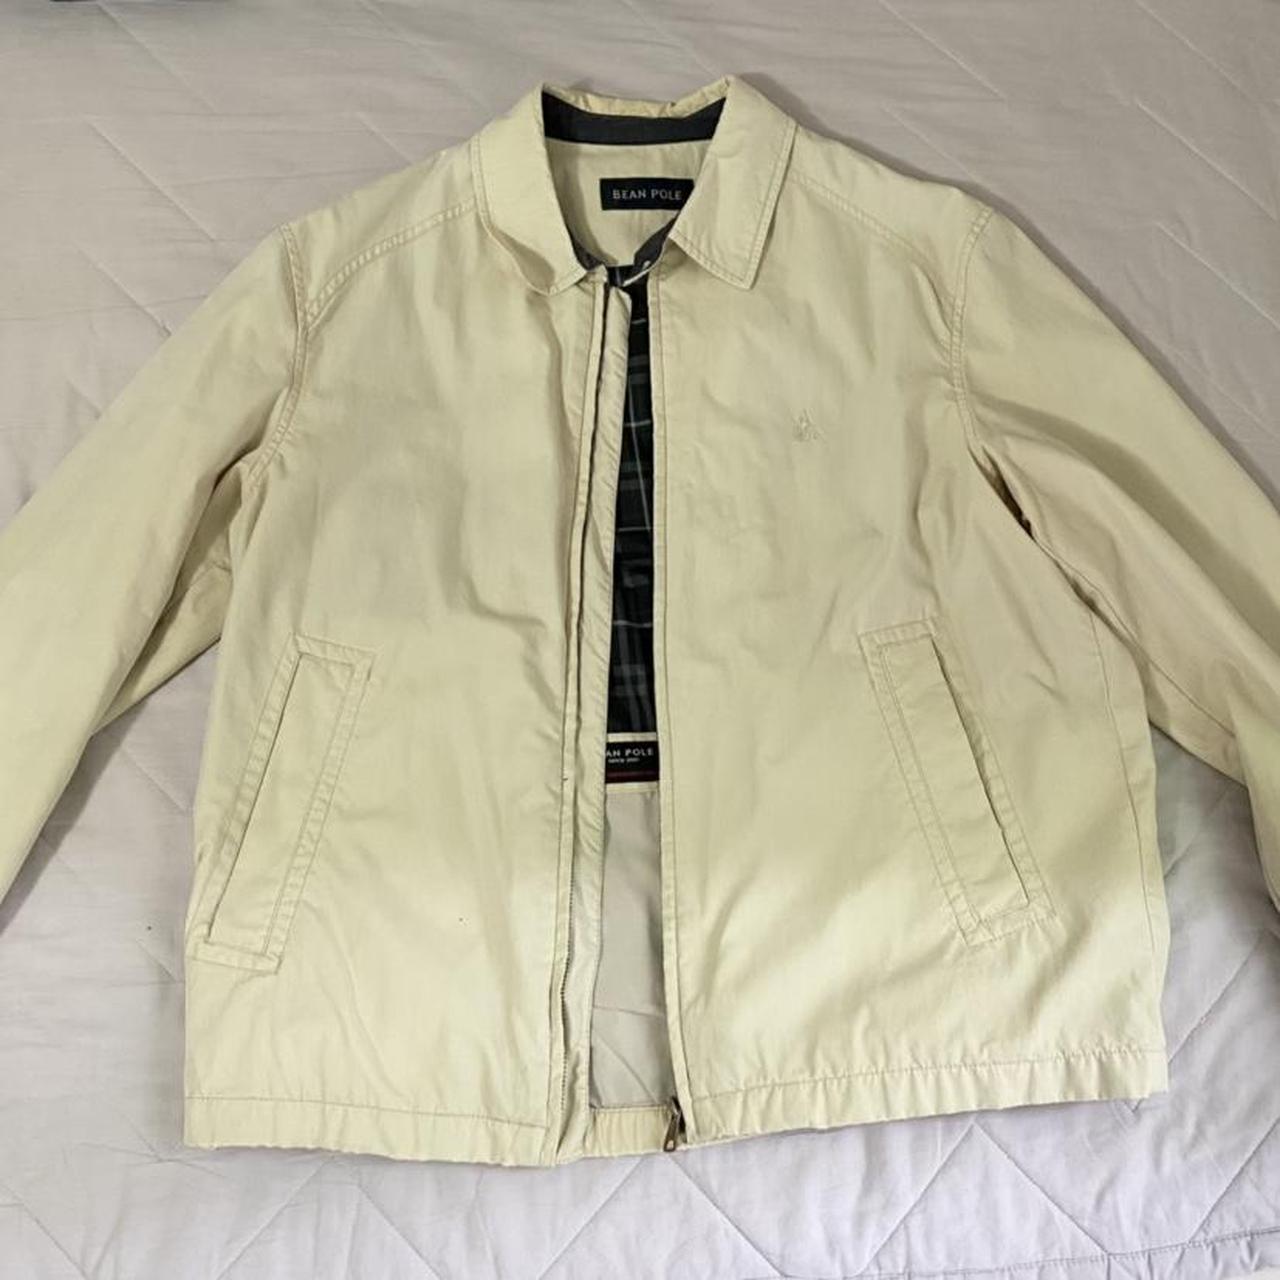 Vintage Beanpole beige jacket size 100–like a men’s... - Depop